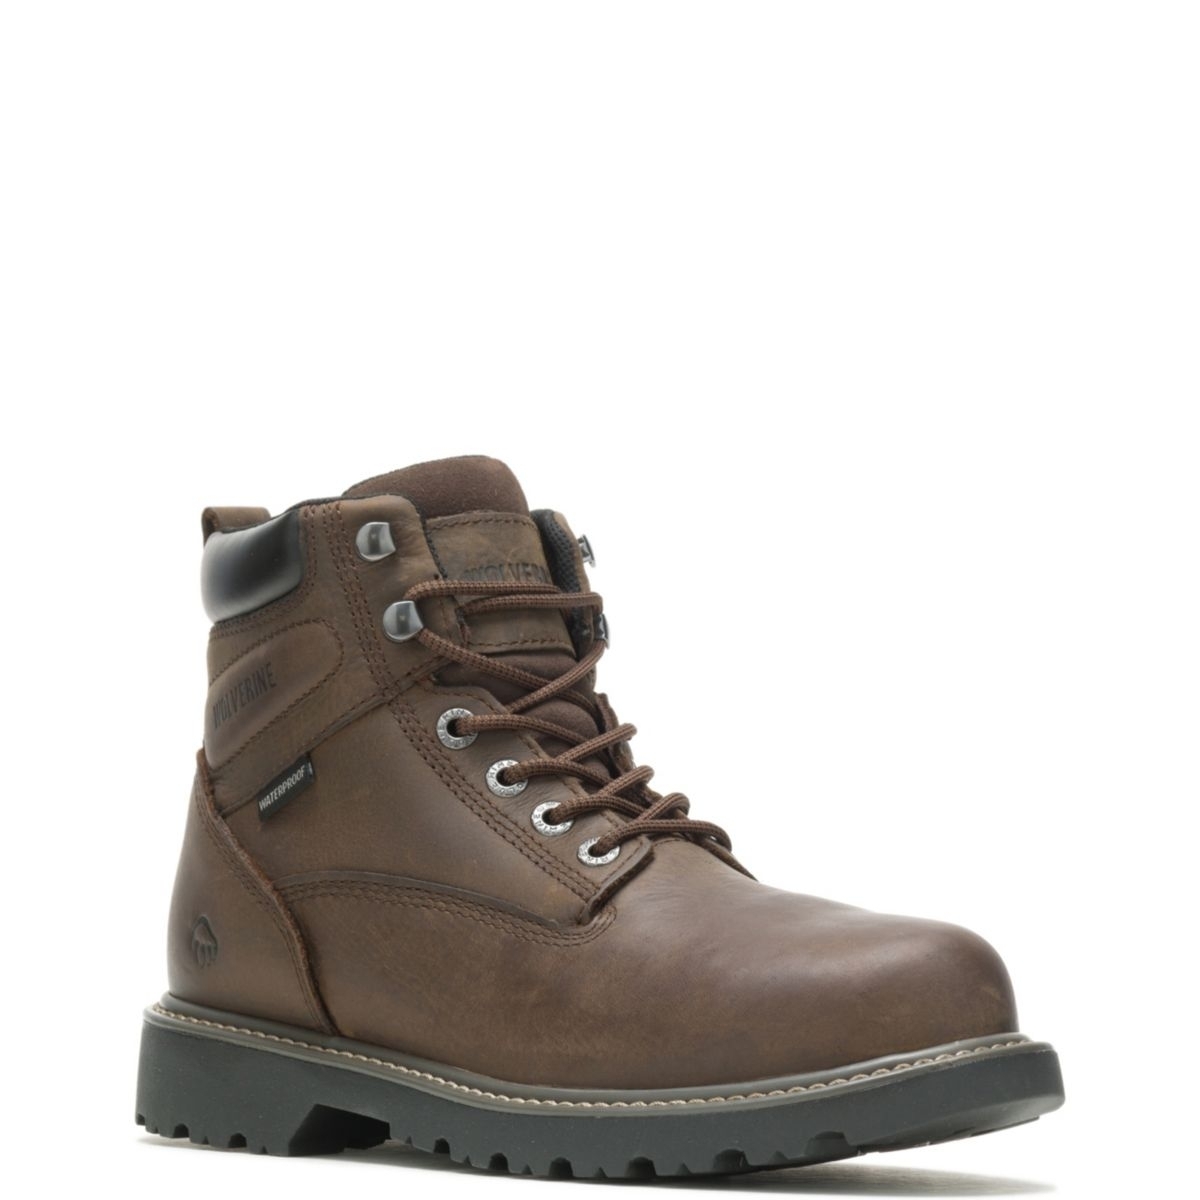 WOLVERINE Men's Floorhand 6 Waterproof Steel Toe Work Boot Dark Brown - W10633 DARK BROWN - DARK BROWN, 8.5 X-Wide